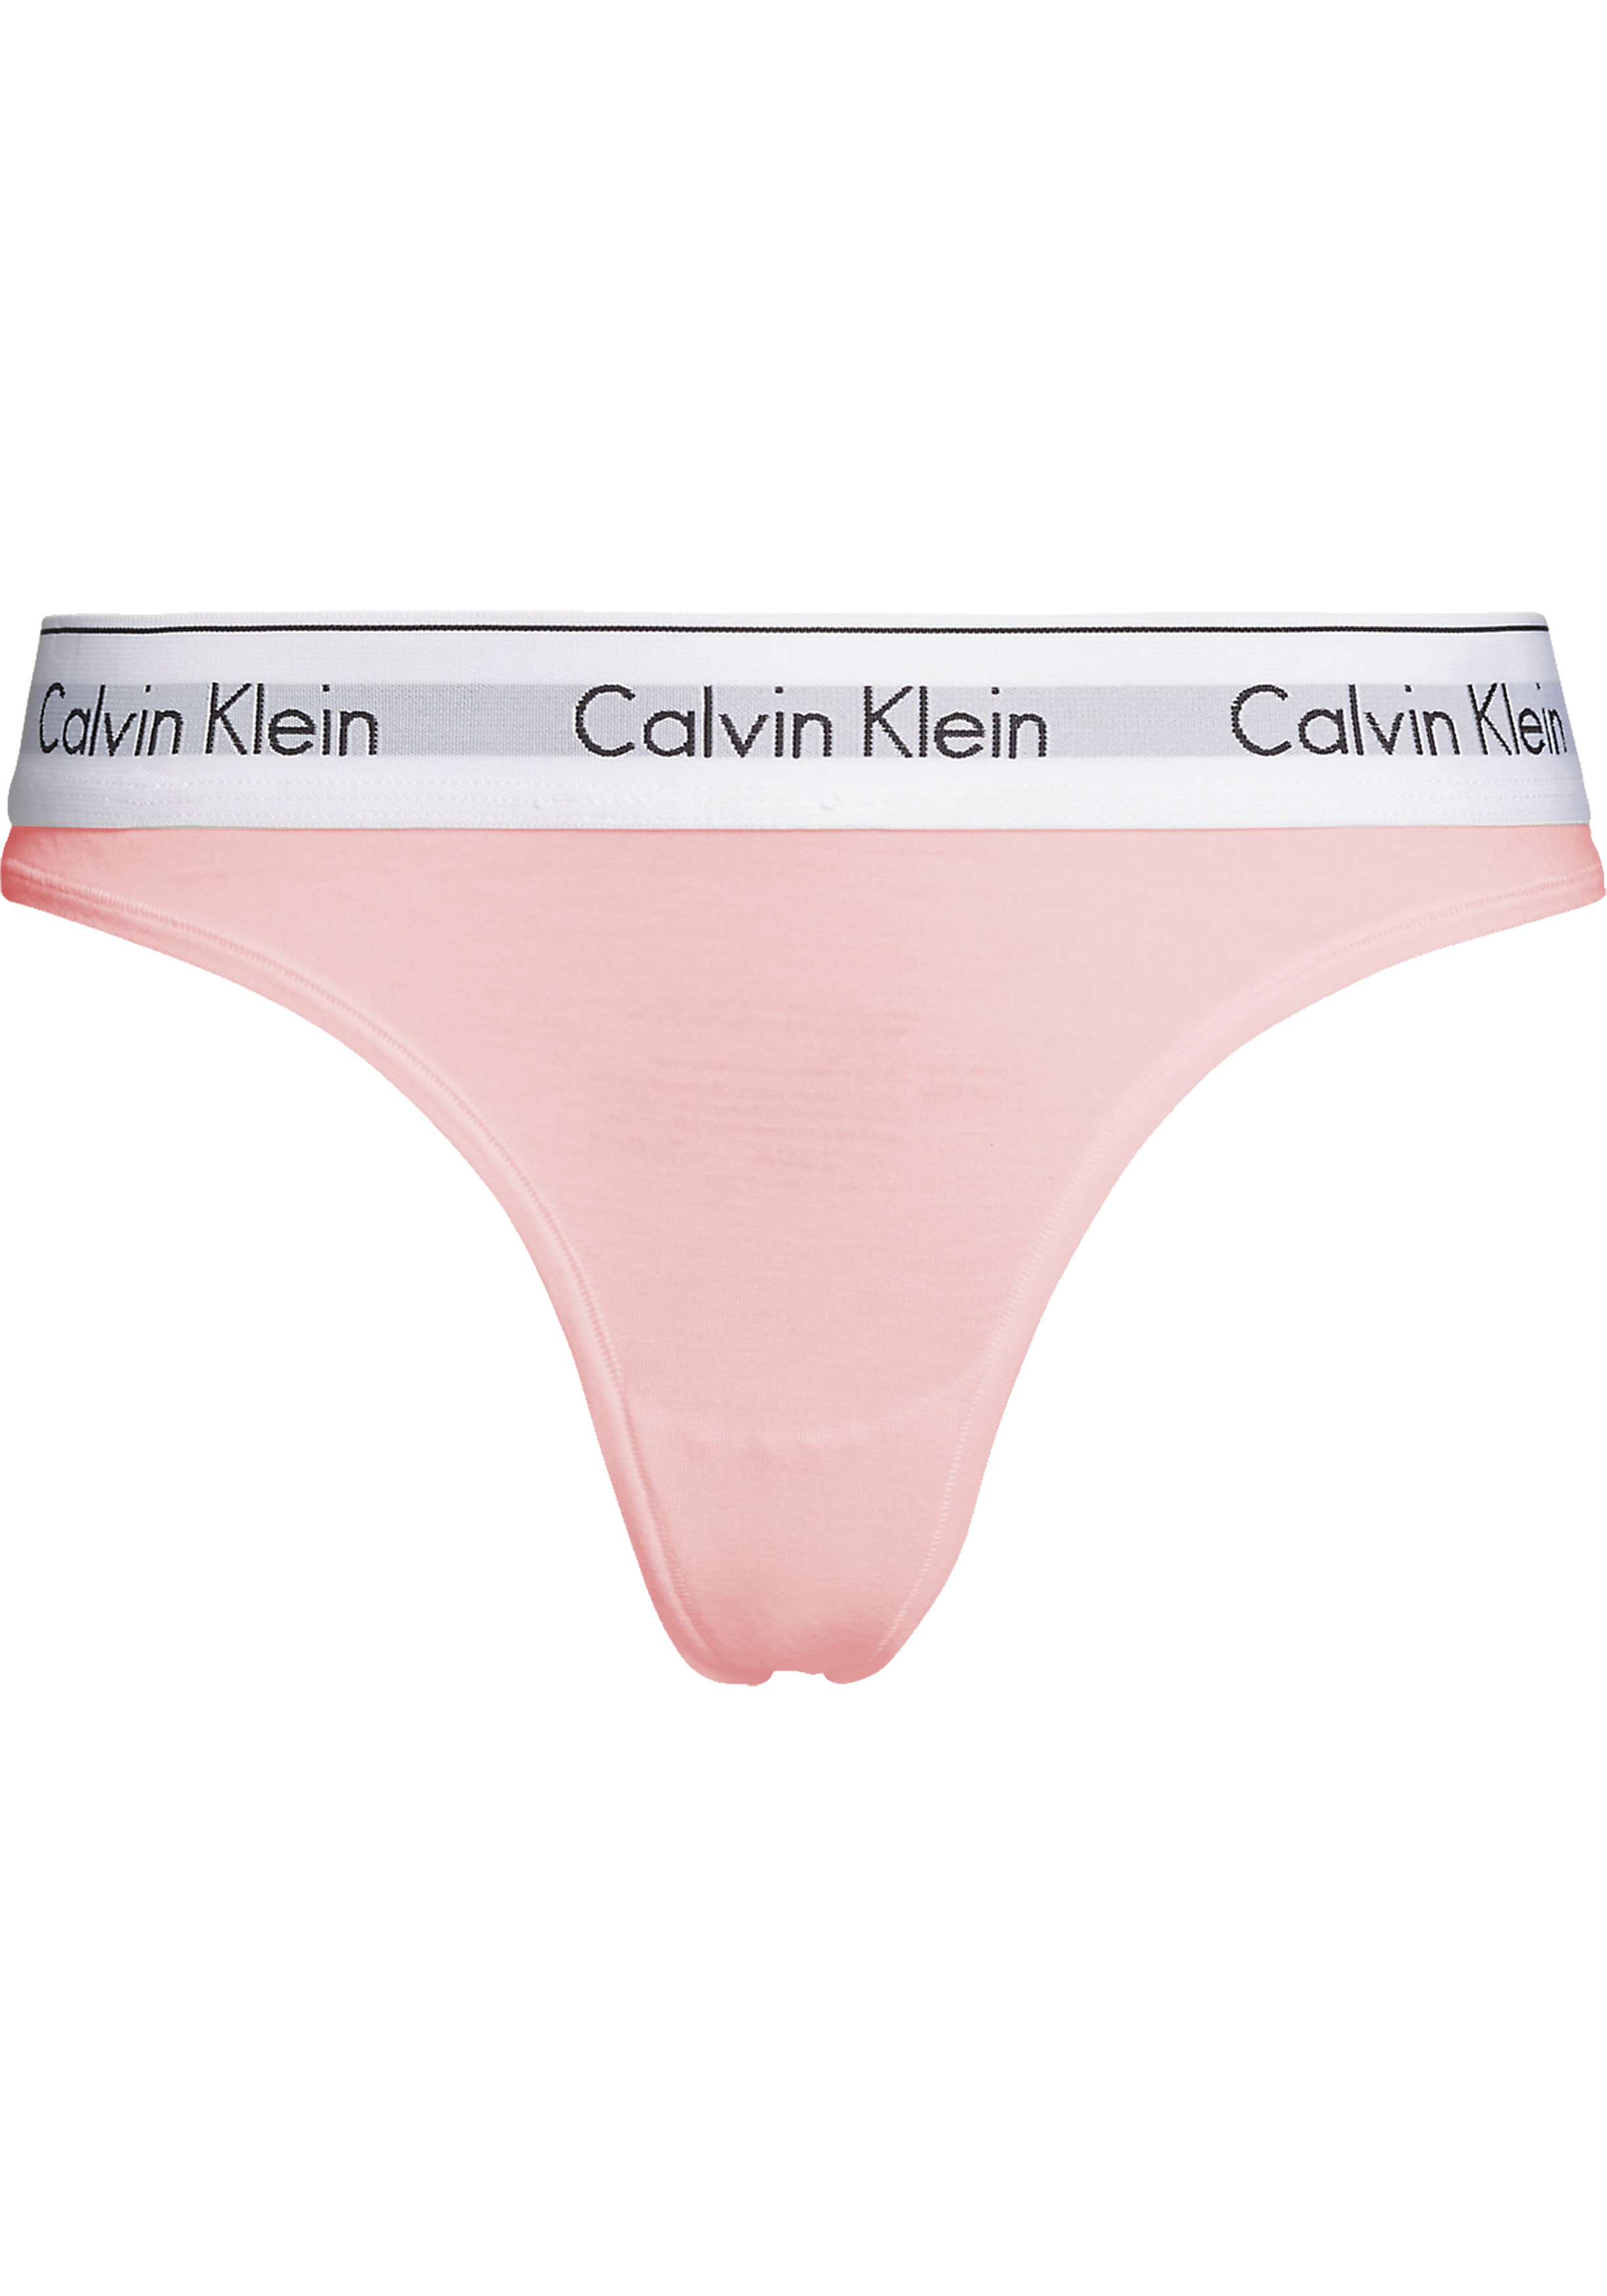 Calvin Klein dames Modern Cotton string, licht roze